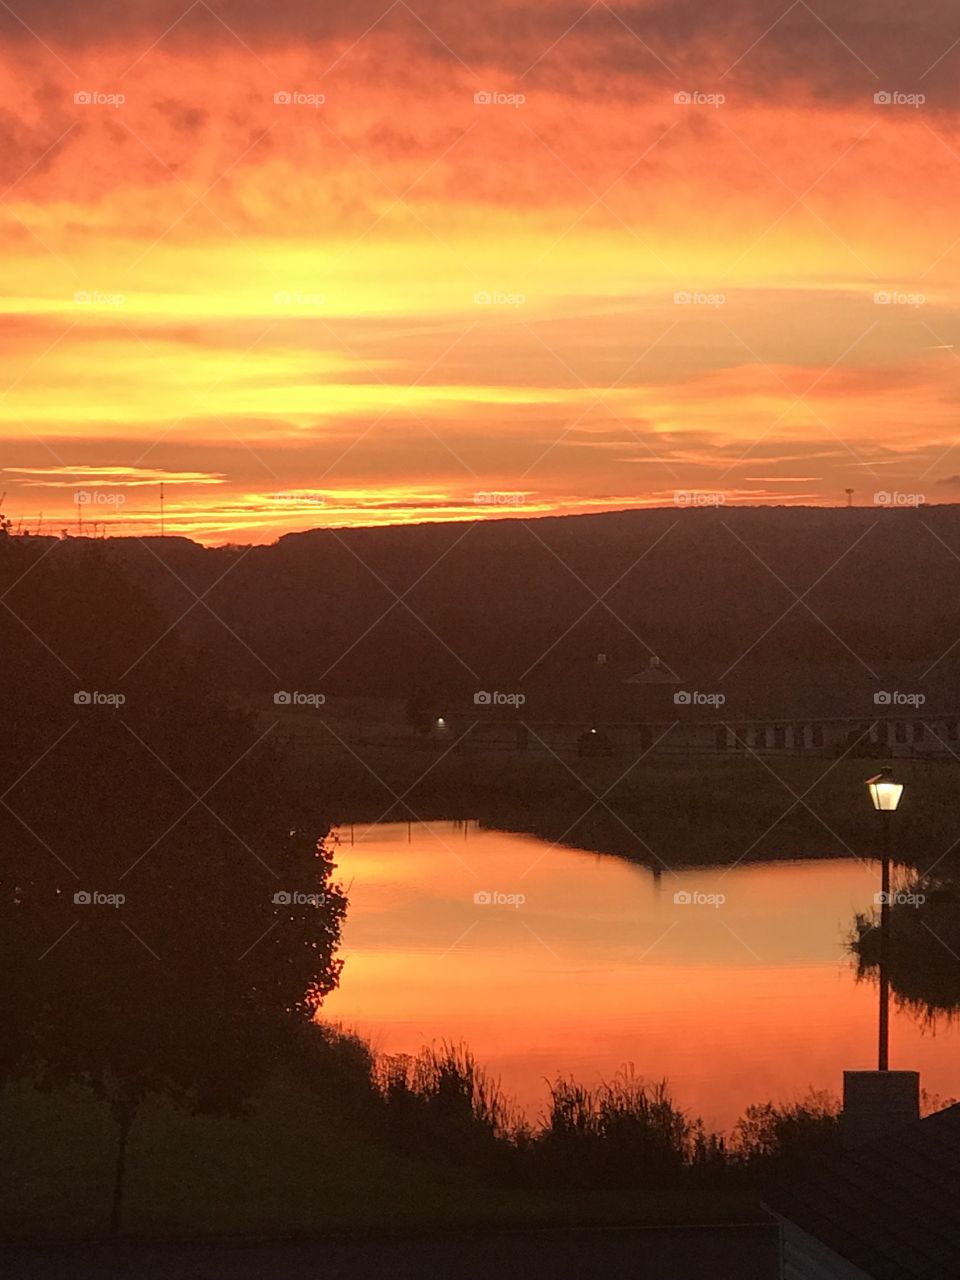 Gorgeous orange sunrise reflecting over a pond. 